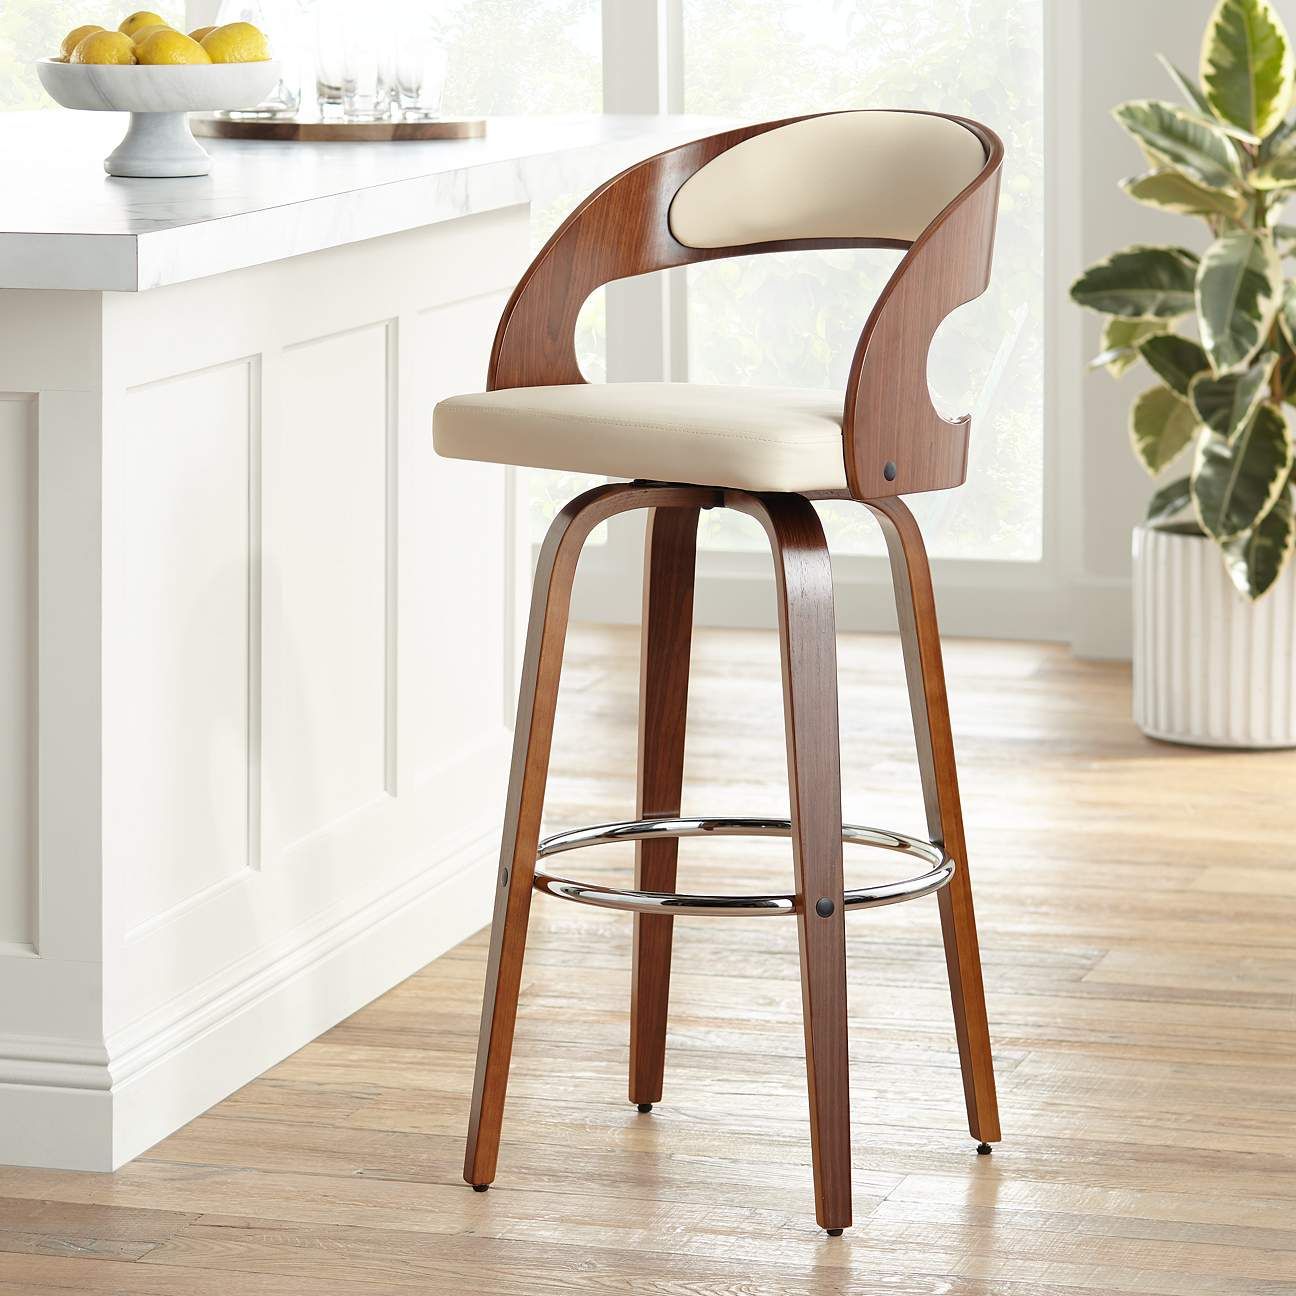 تصميم كرسي عالي من الخشب لمطابخ كلاسيكية 